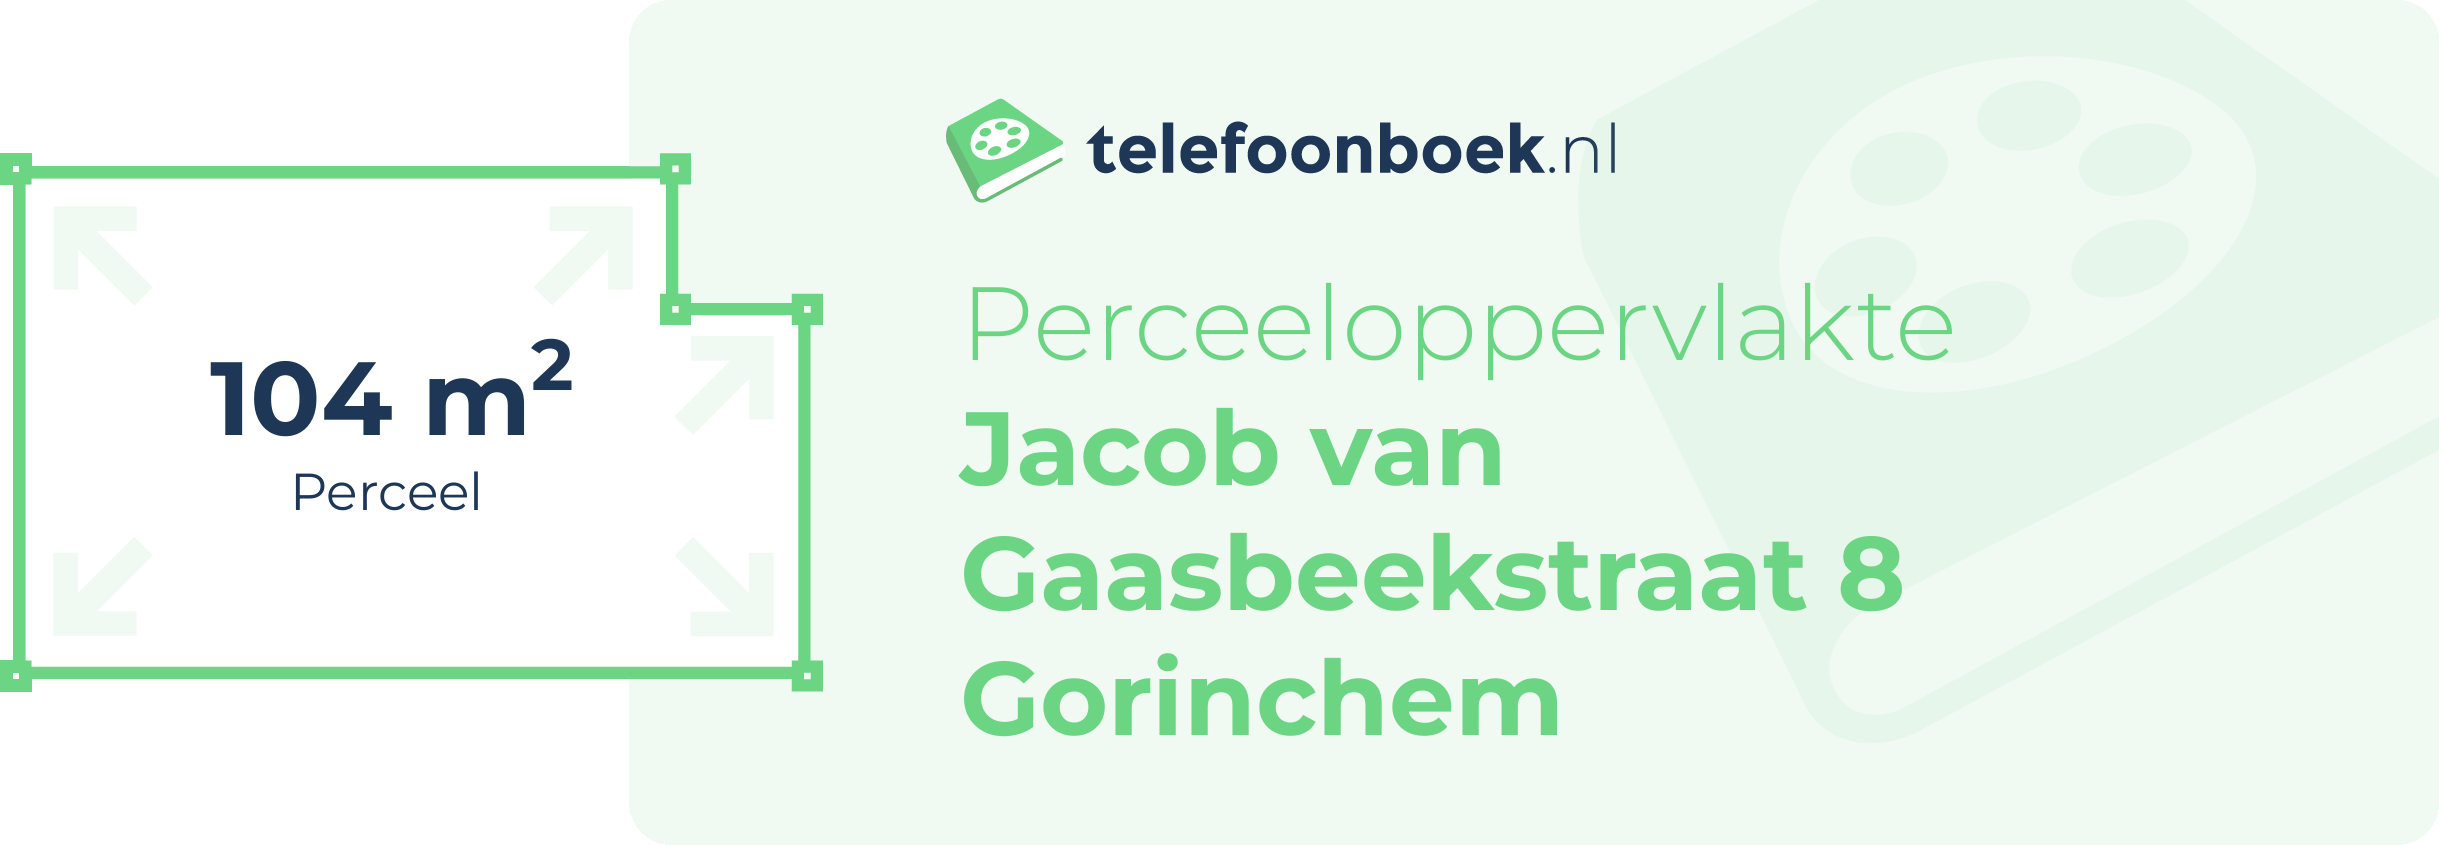 Perceeloppervlakte Jacob Van Gaasbeekstraat 8 Gorinchem